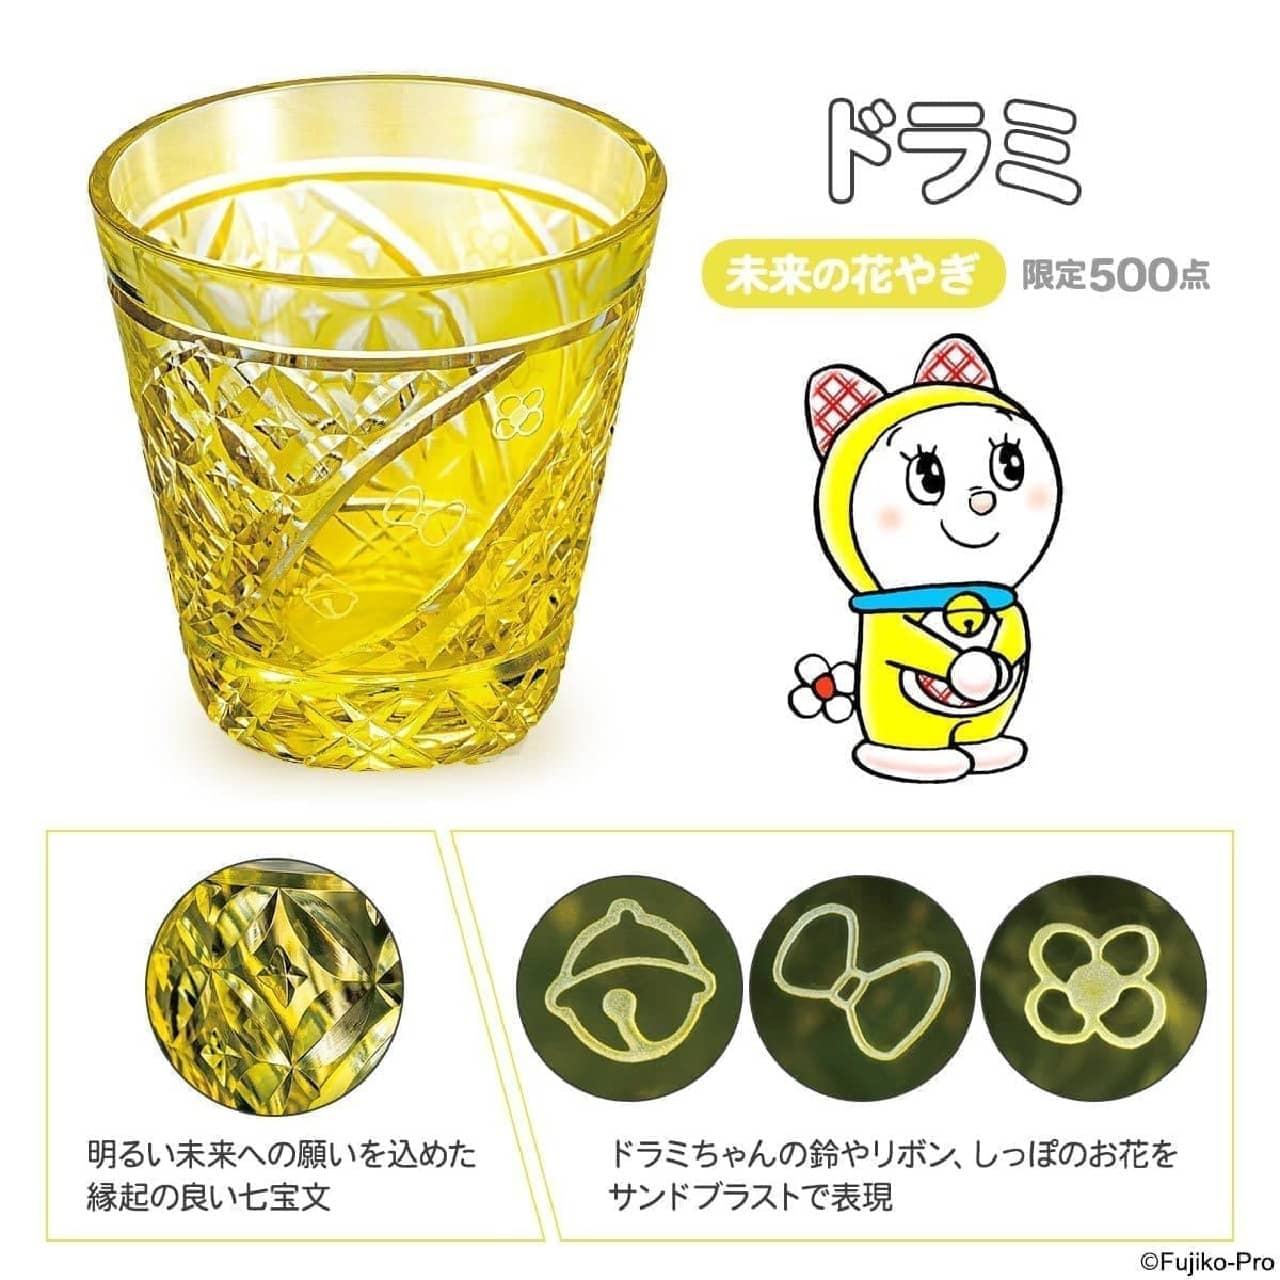 「ドラえもん 夢切子 江戸切子グラス」発売 -- タイムふろしき・アンキパンの模様も